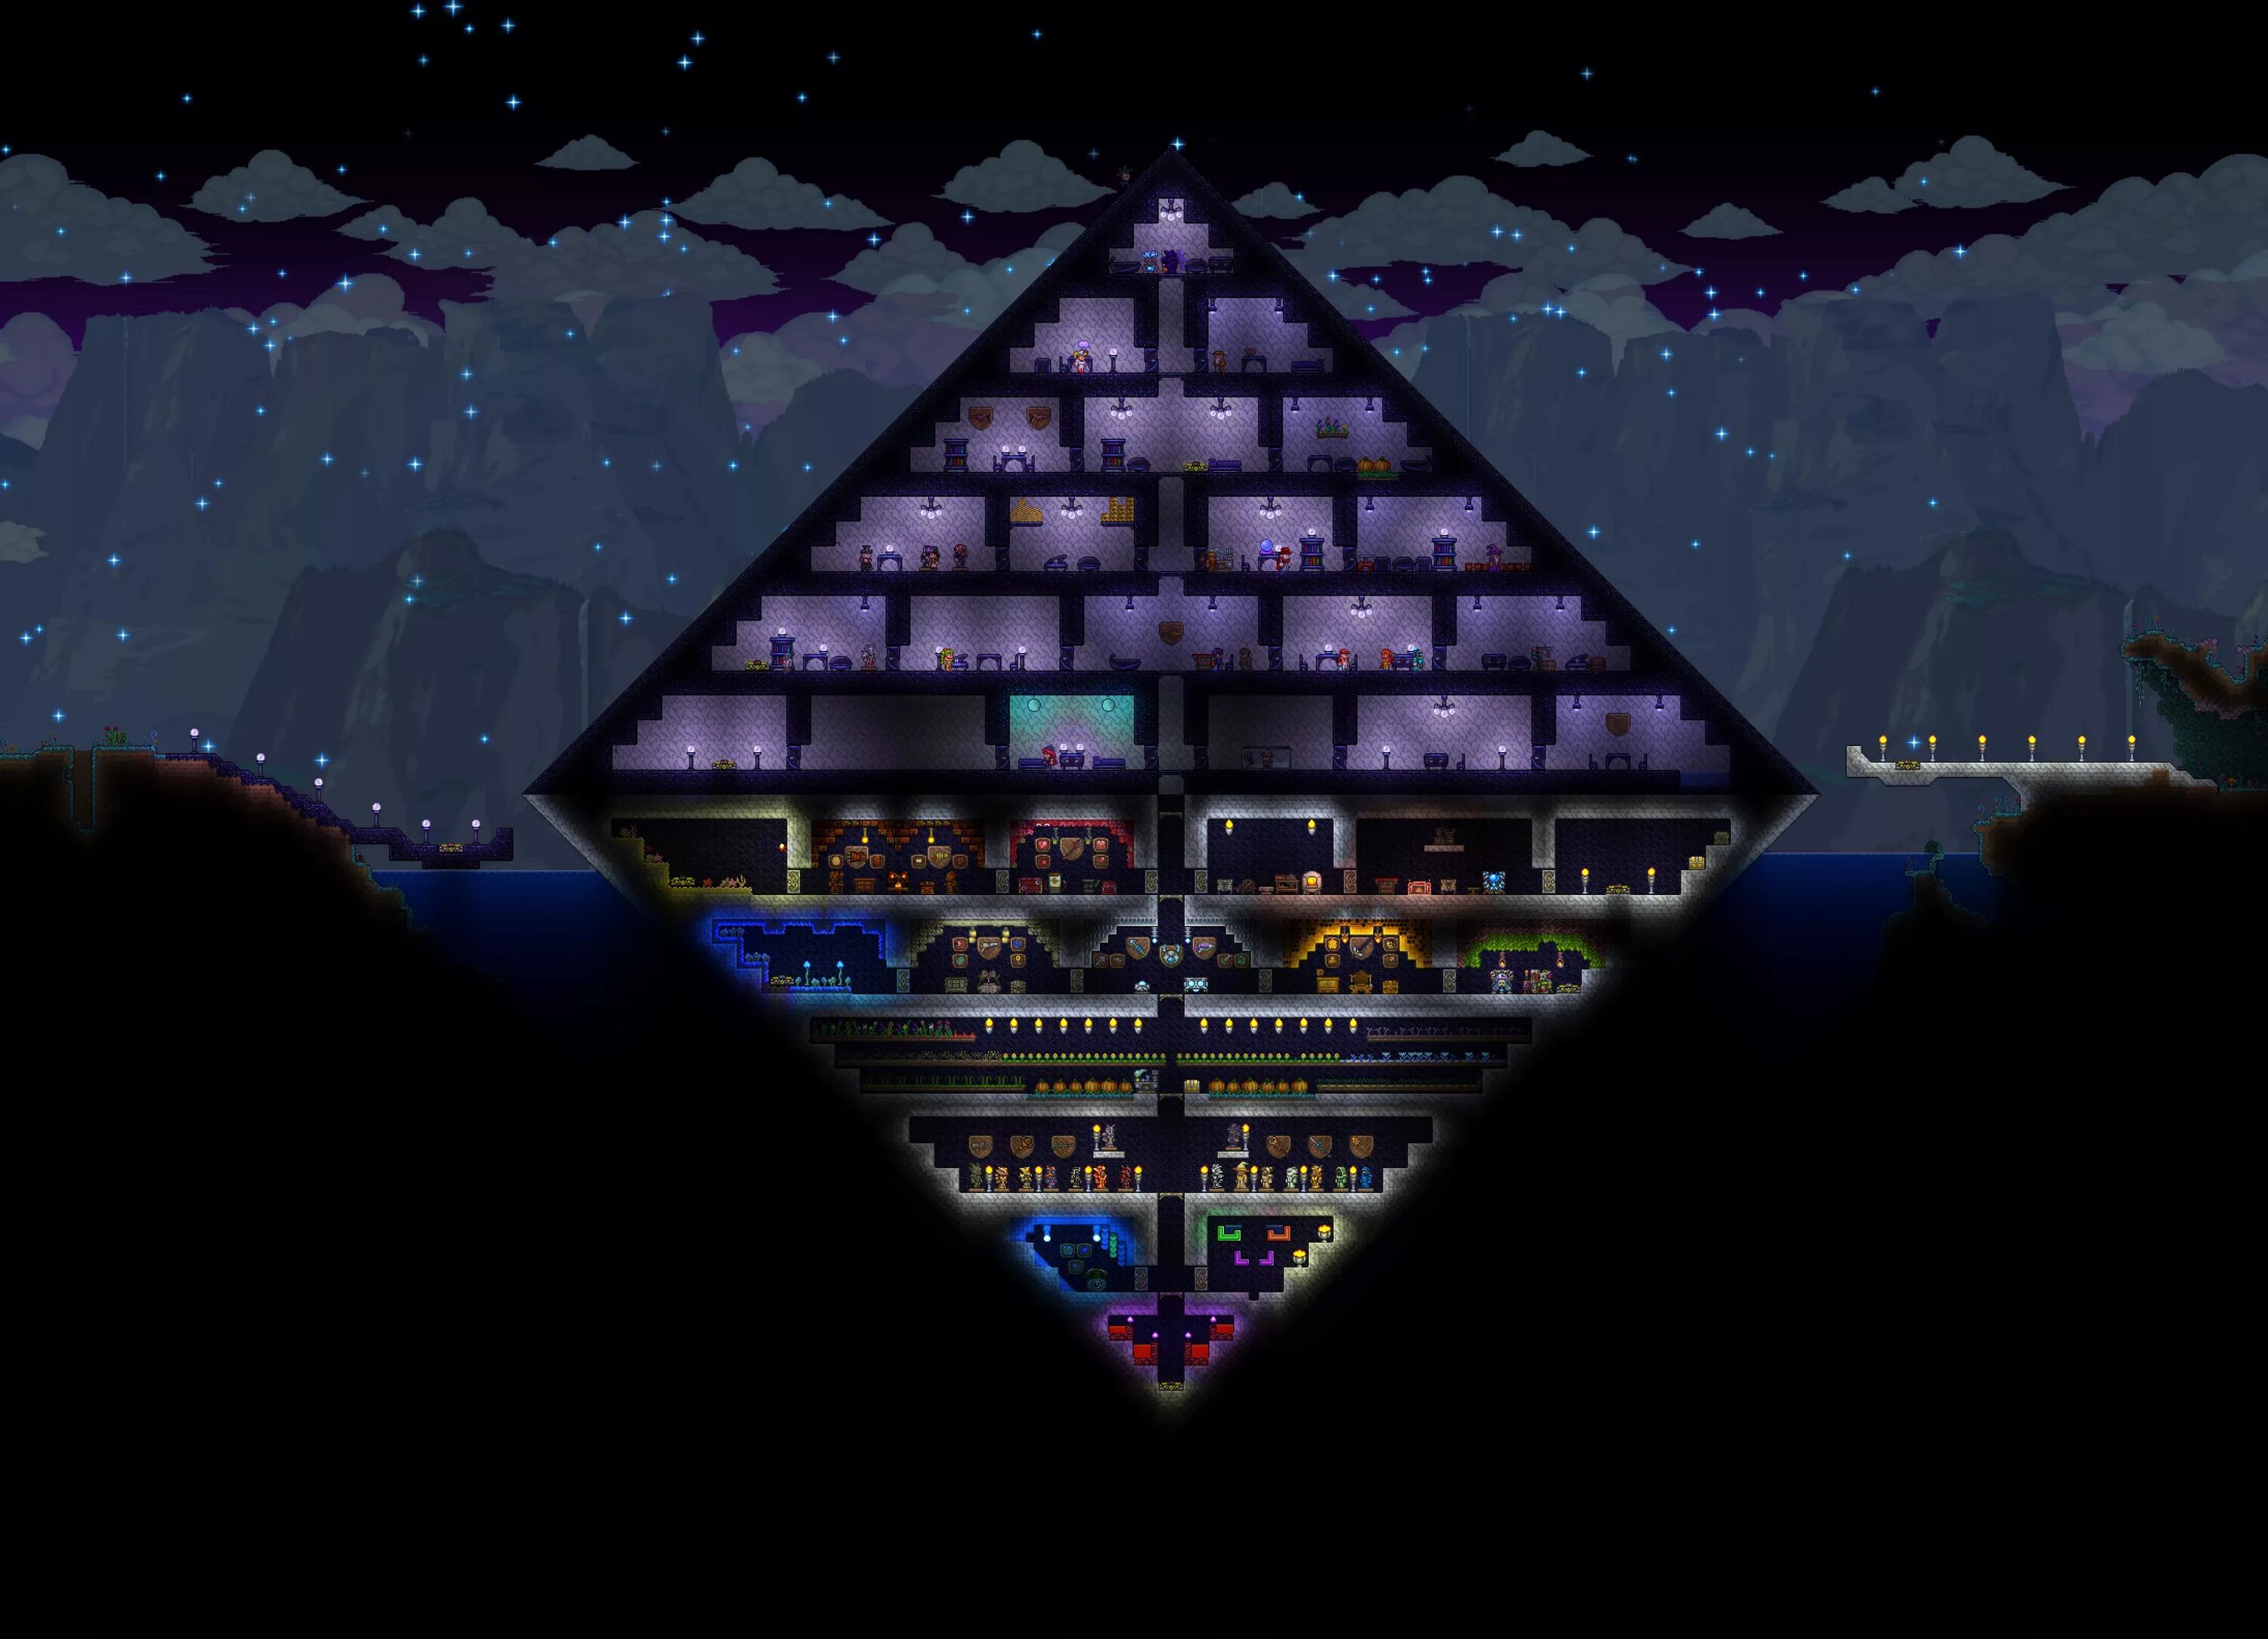 Alchemist terraria. Черная пирамида Нагаша. Чёрная пирамида вархаммер. Стол алхимика террария. Столпы террария.